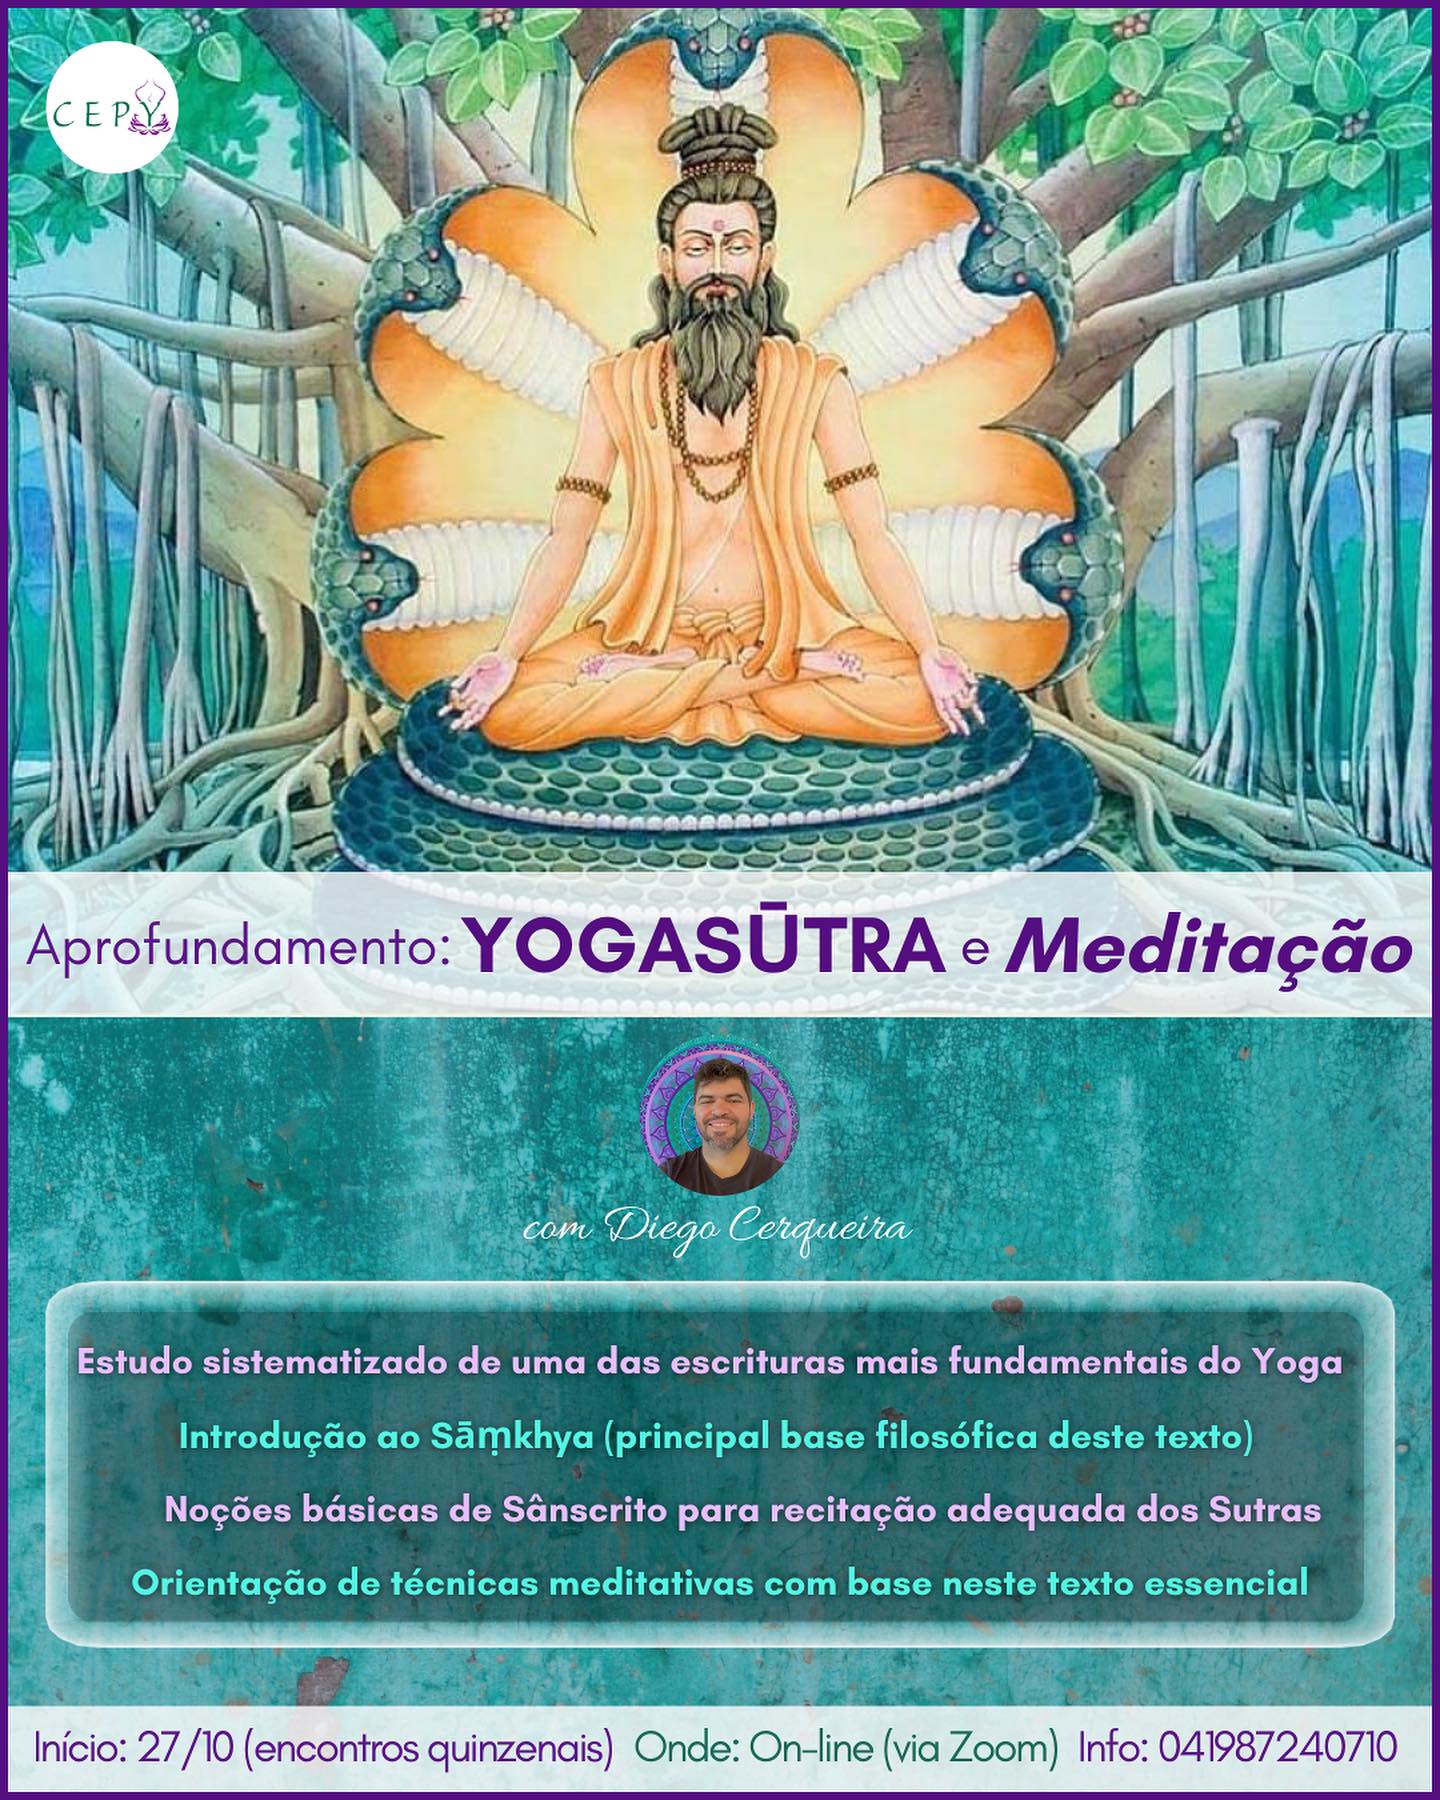 Aprofundamento Yogasūtra e Meditação. 